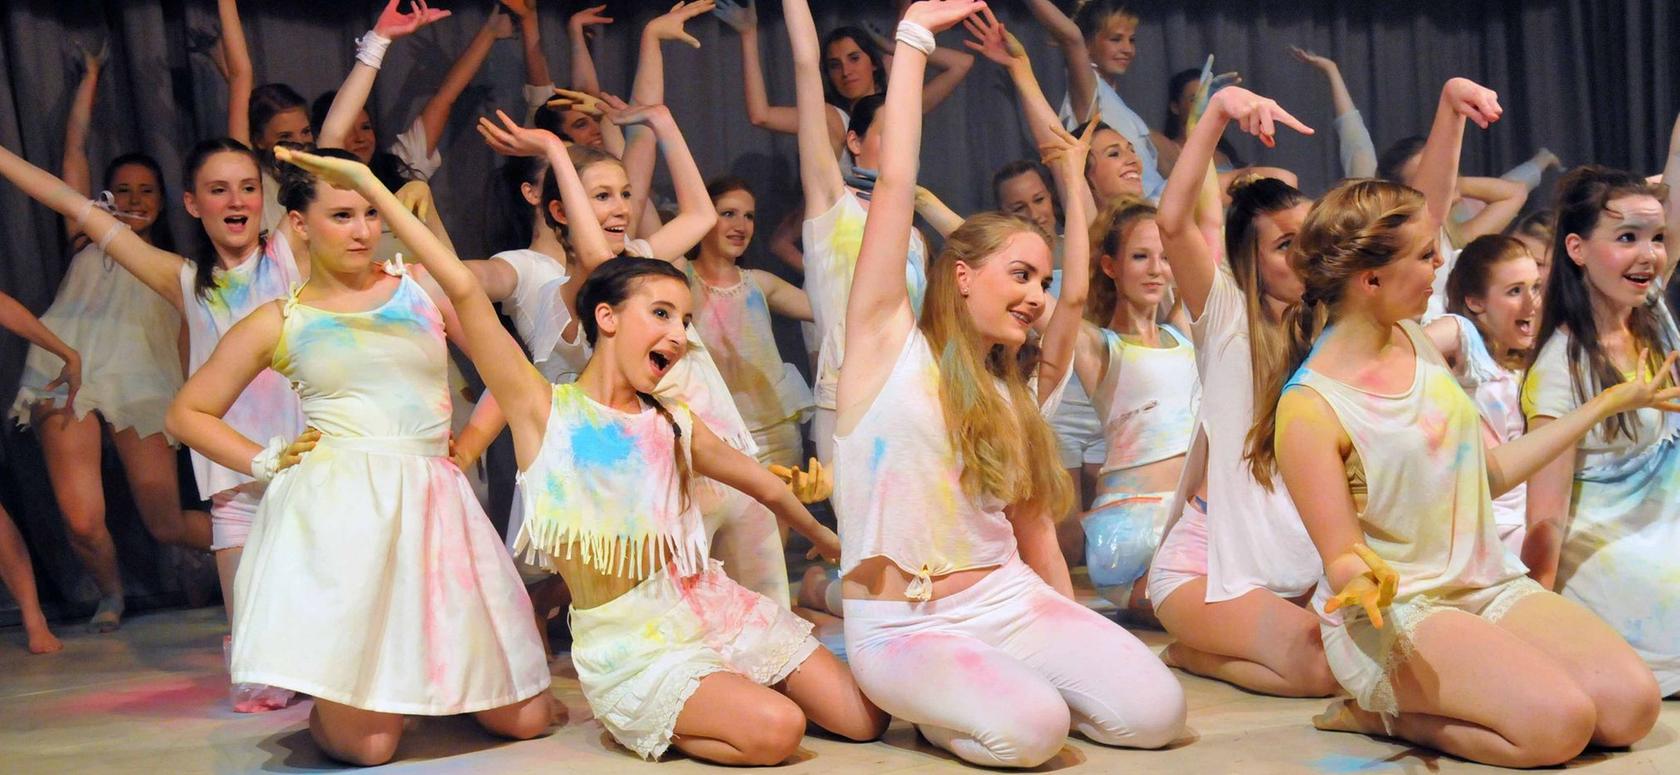 Die Facetten des Glücks brachten die jungen Tänzerinnen auf die Bühne. Die Aufführung erwies sich als multimediales Gesamtkunstwerk.